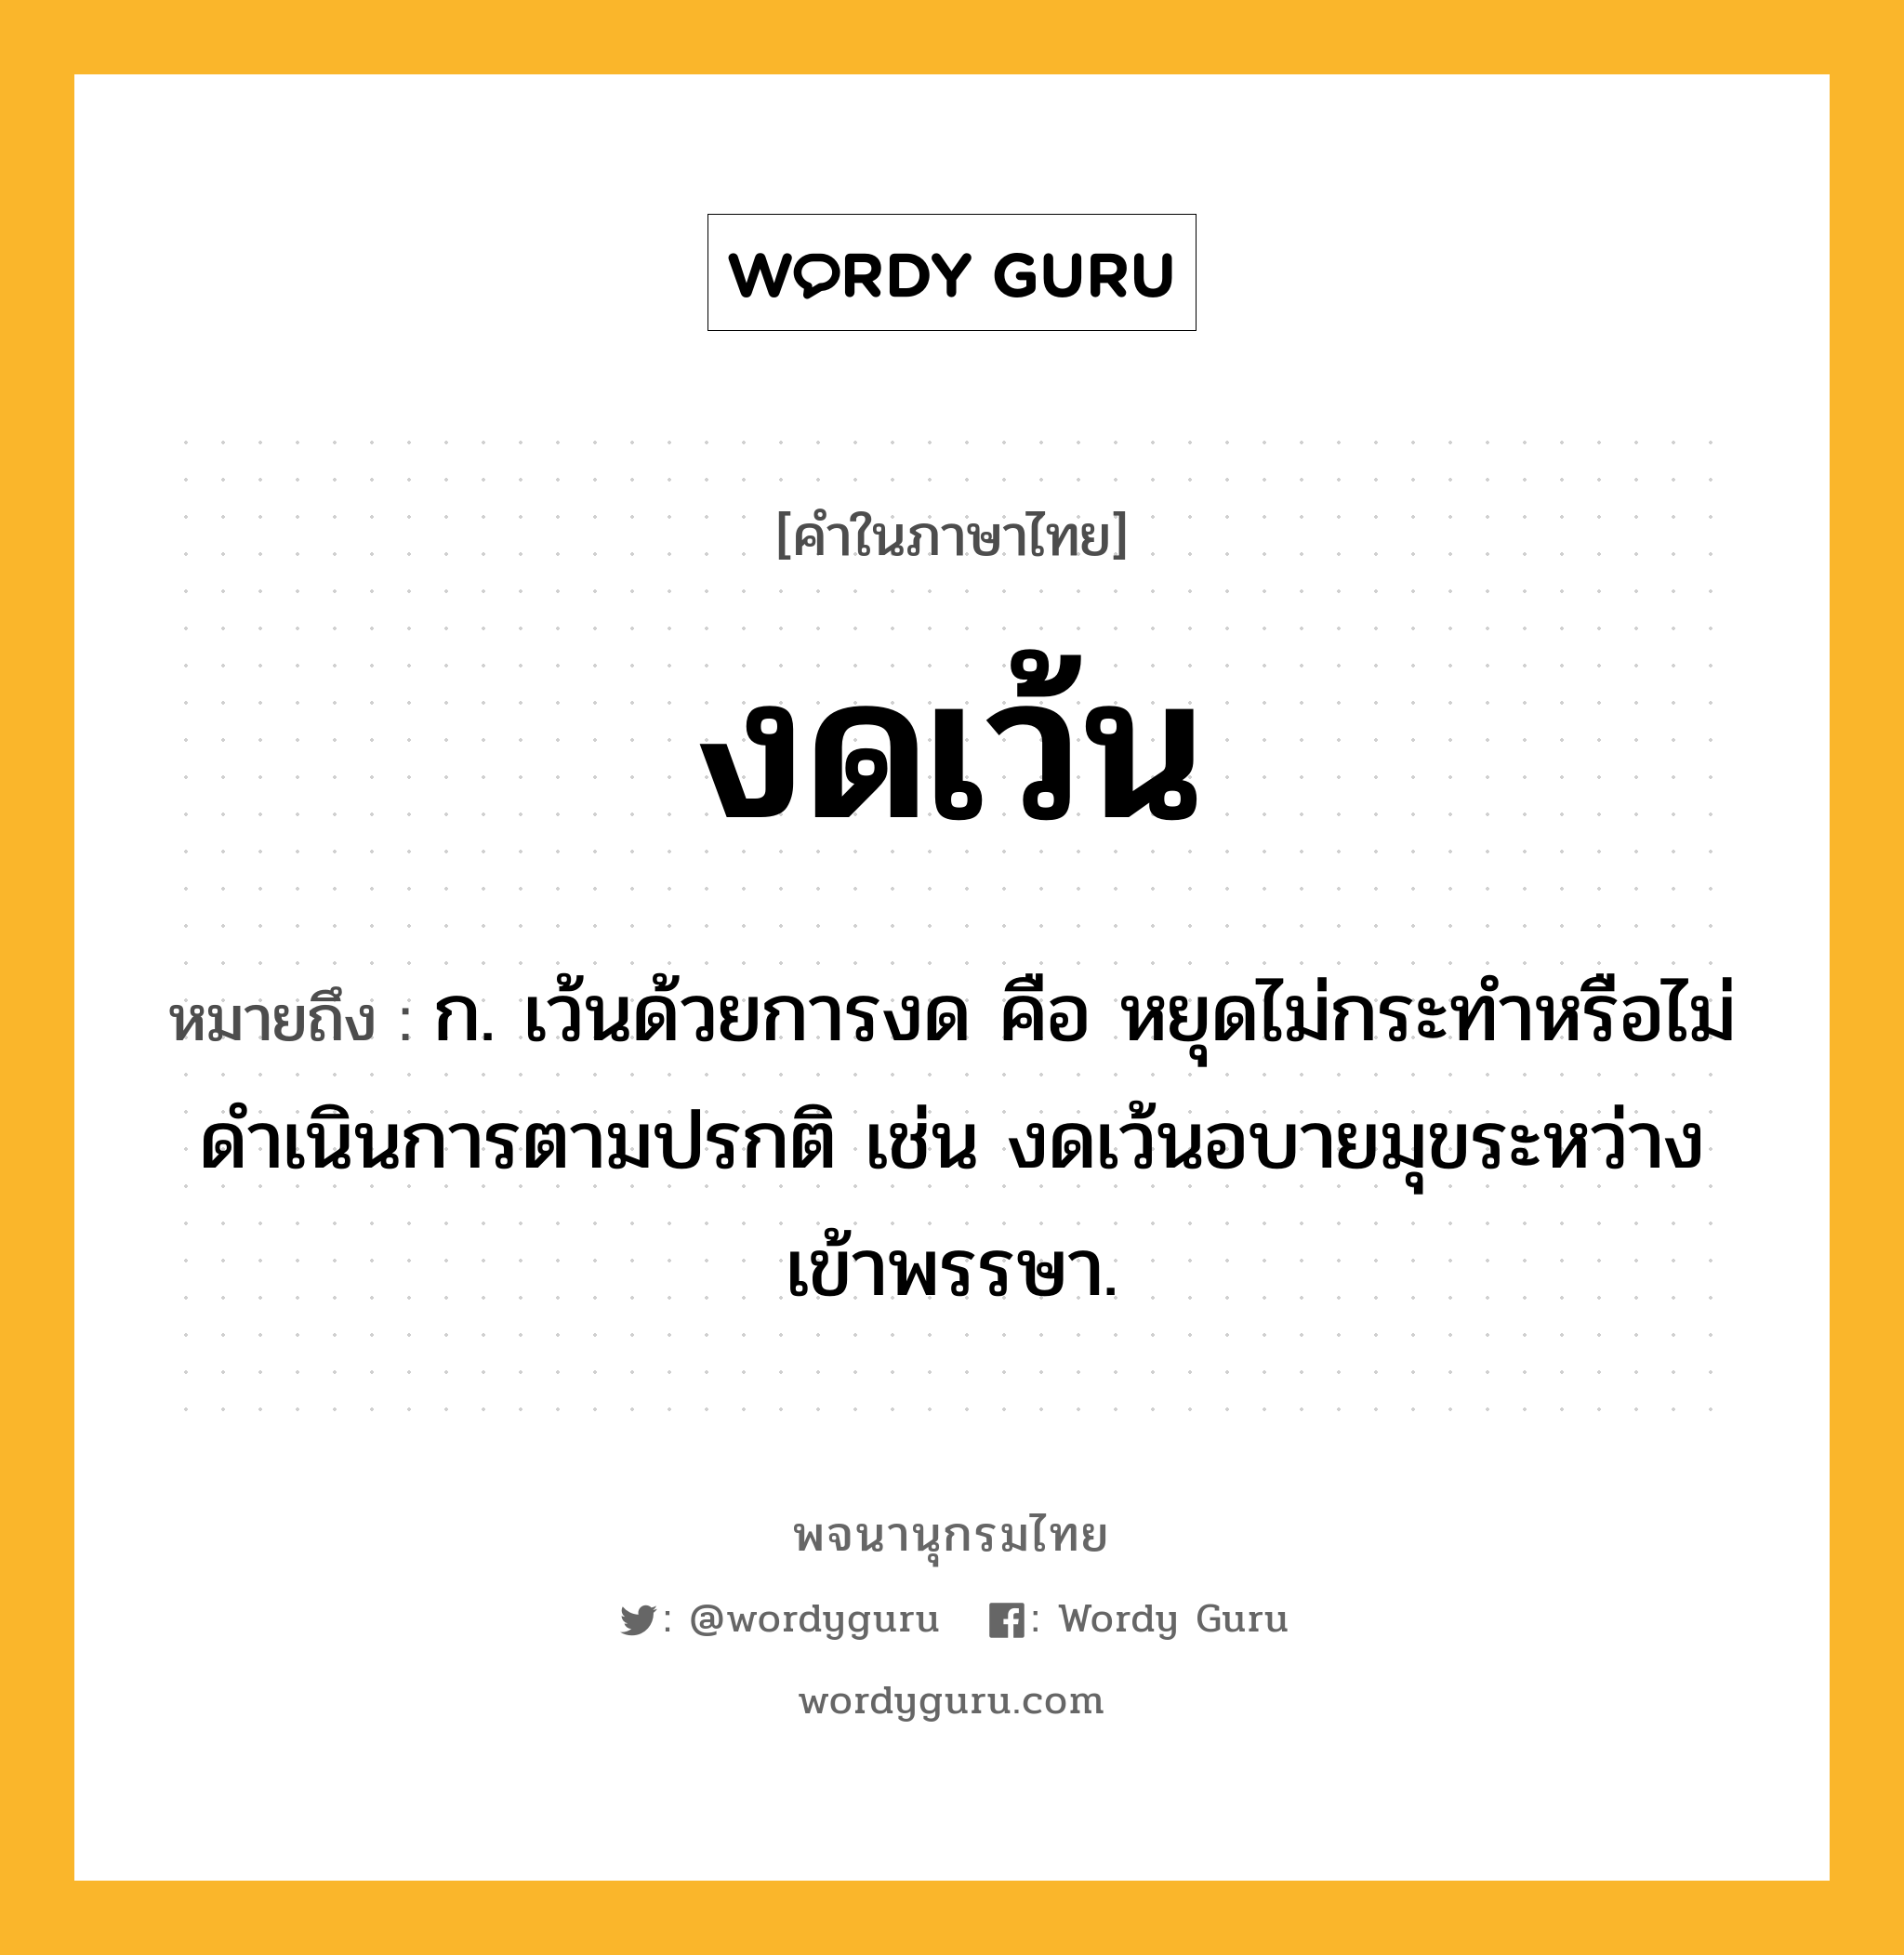 งดเว้น หมายถึงอะไร?, คำในภาษาไทย งดเว้น หมายถึง ก. เว้นด้วยการงด คือ หยุดไม่กระทำหรือไม่ดำเนินการตามปรกติ เช่น งดเว้นอบายมุขระหว่างเข้าพรรษา.